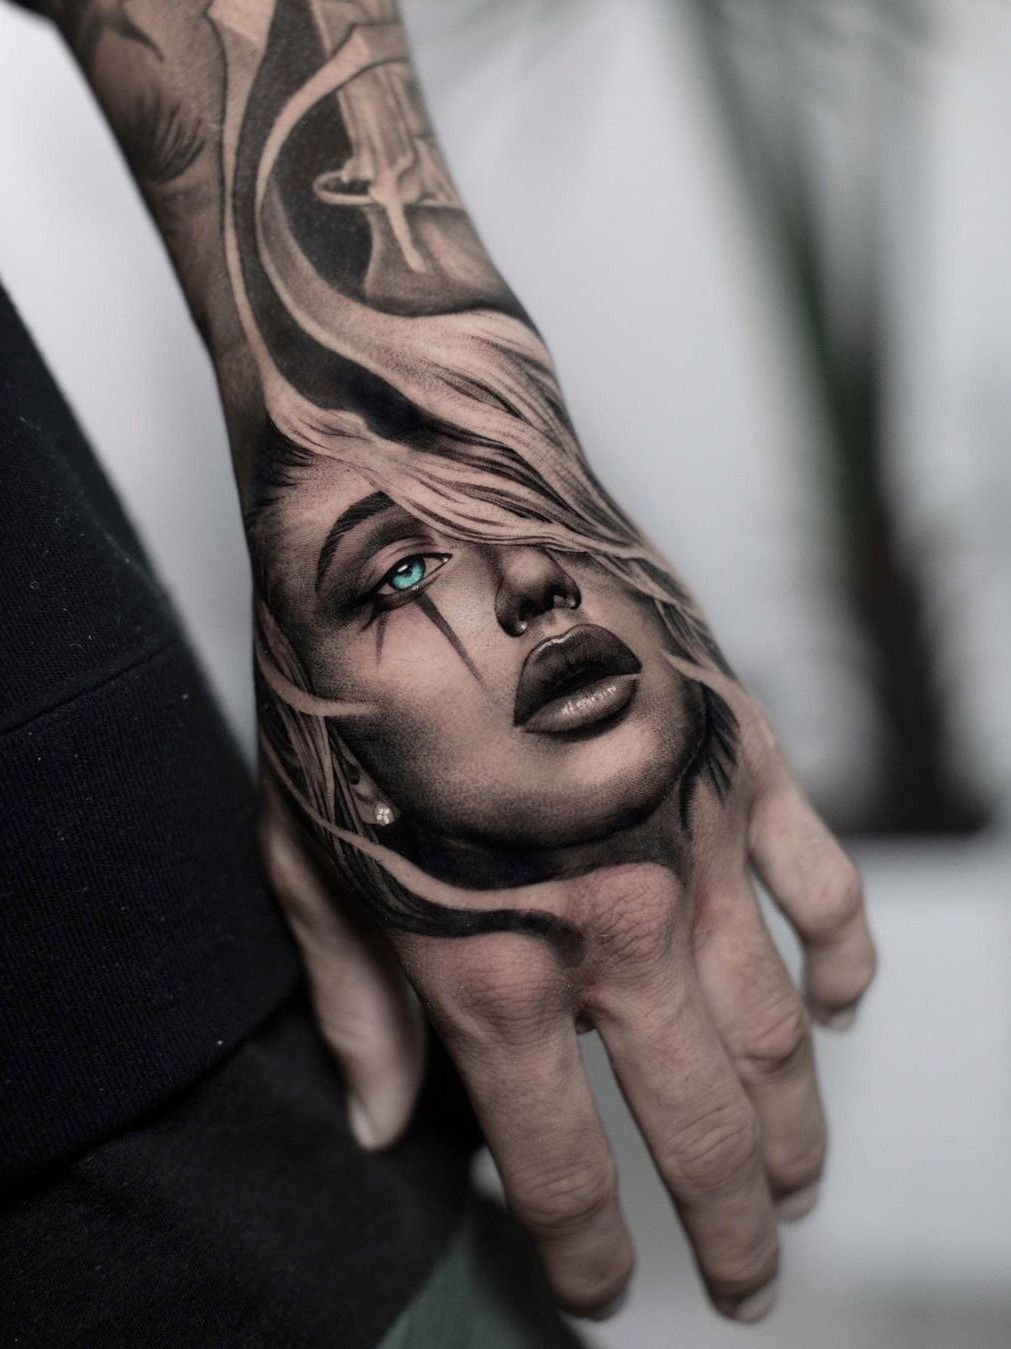 Hand tattoo realism skull by DTD17 on DeviantArt